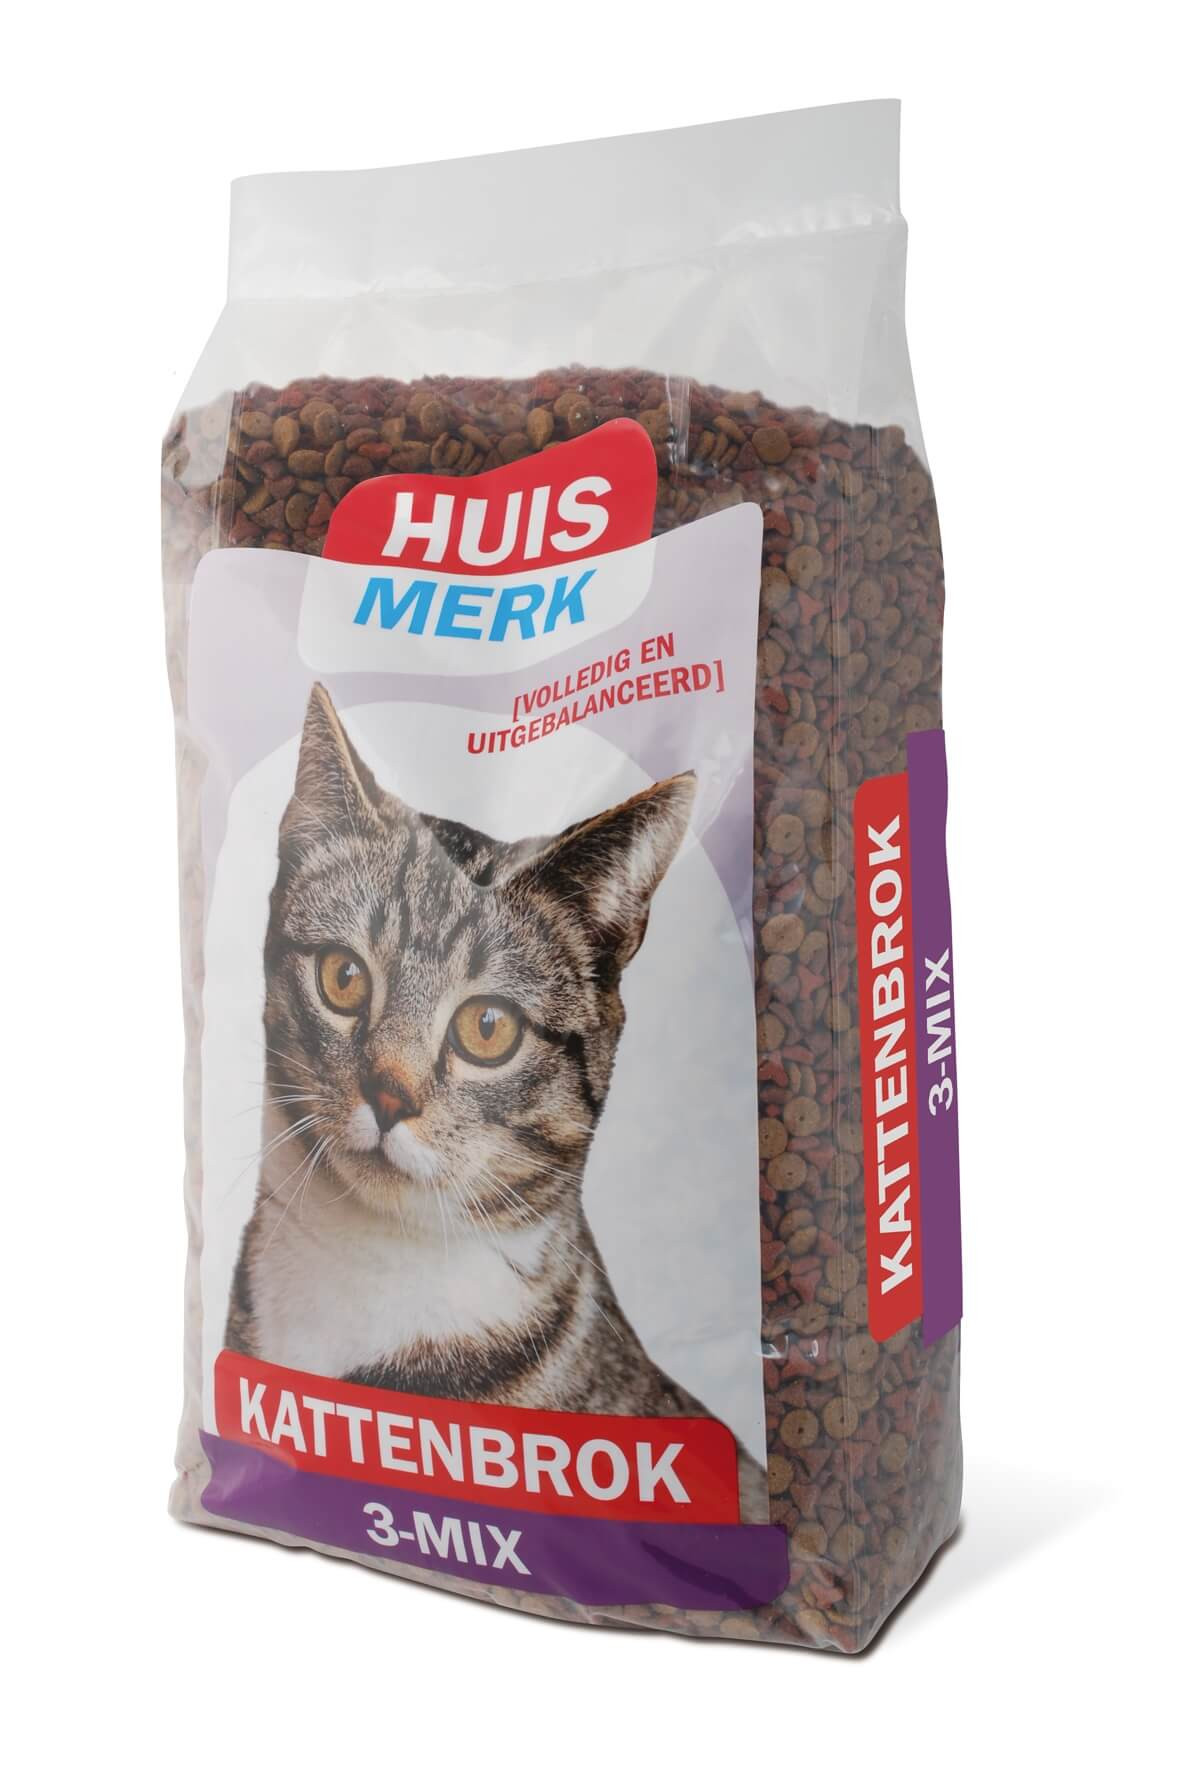 Huismerk Krokant Kattenbrok 3-Mix 10kg € 25.95